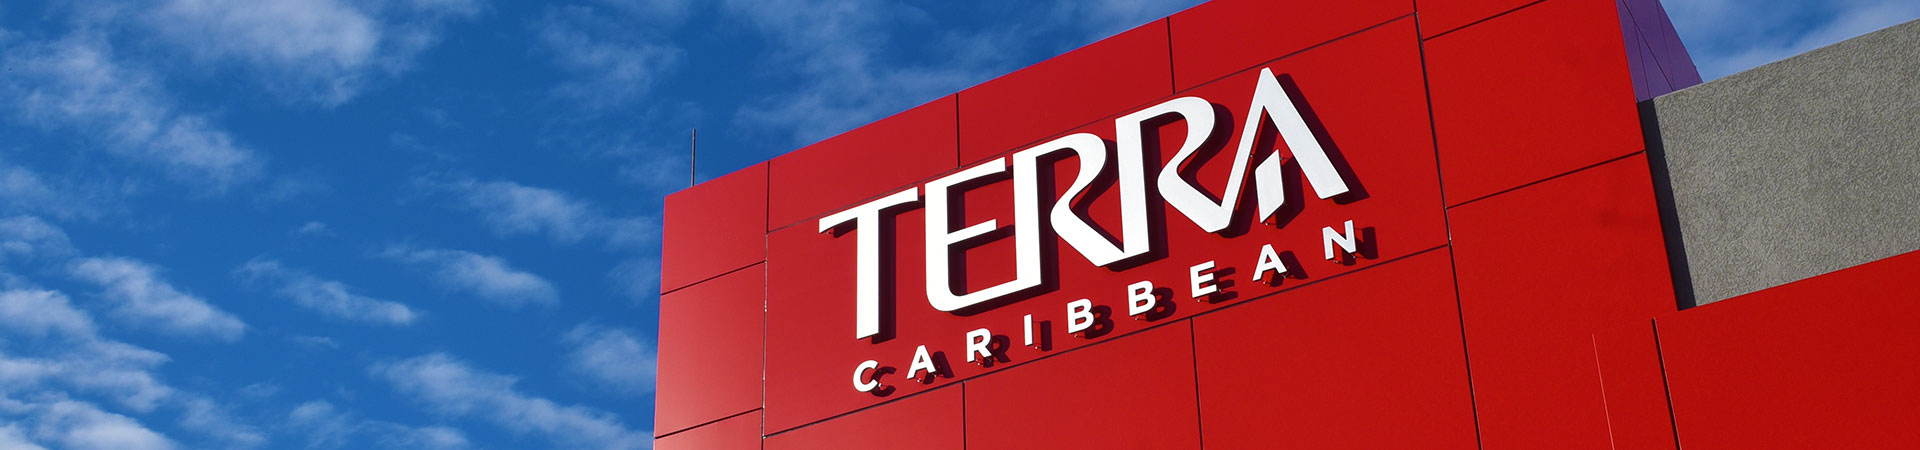 Terra Caribbean Grenada - The Red Book